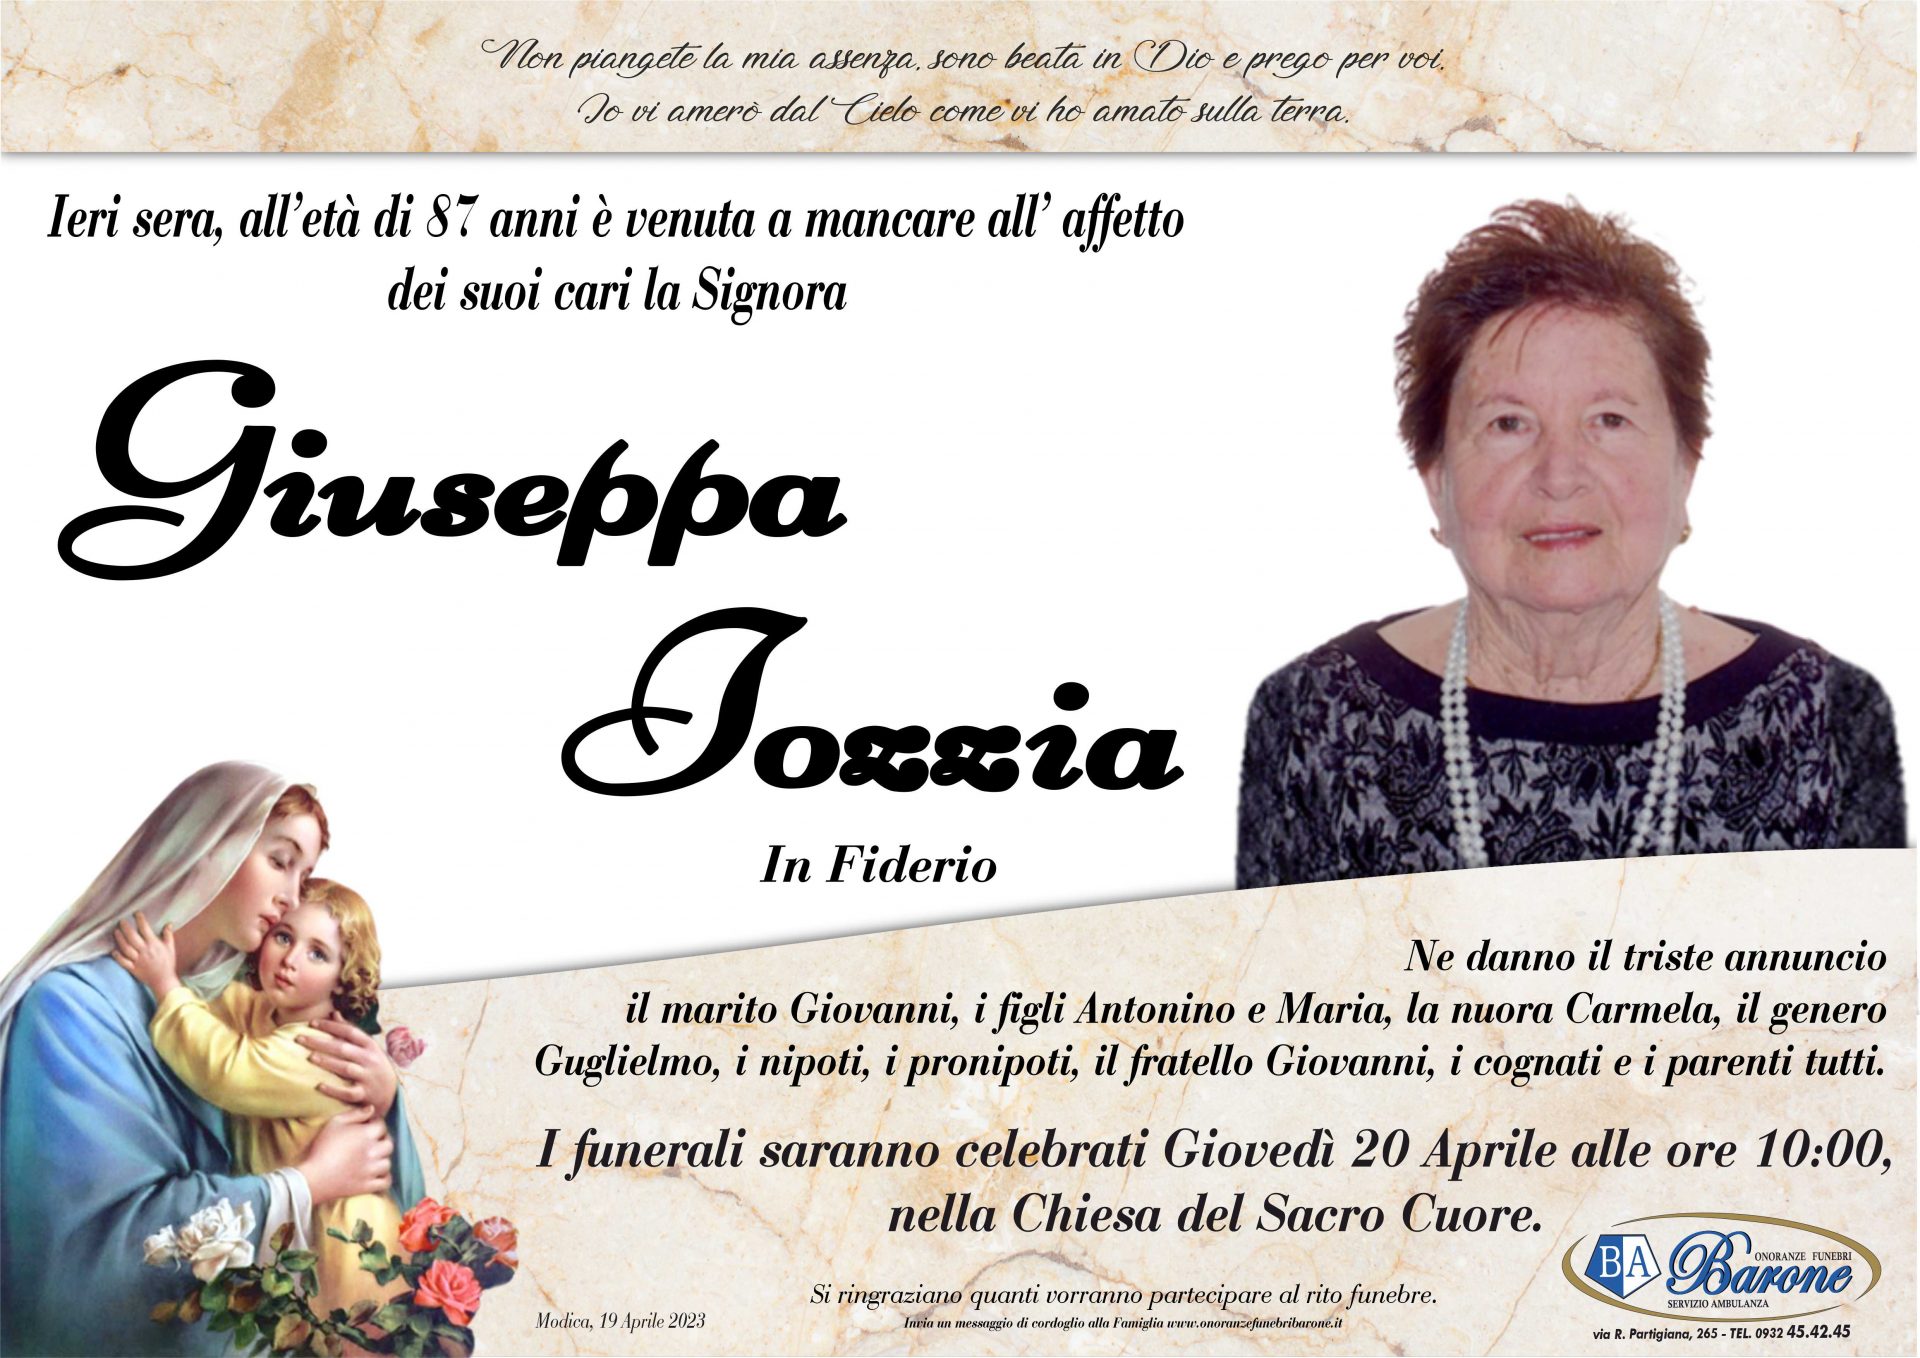 Giuseppa Iozzia